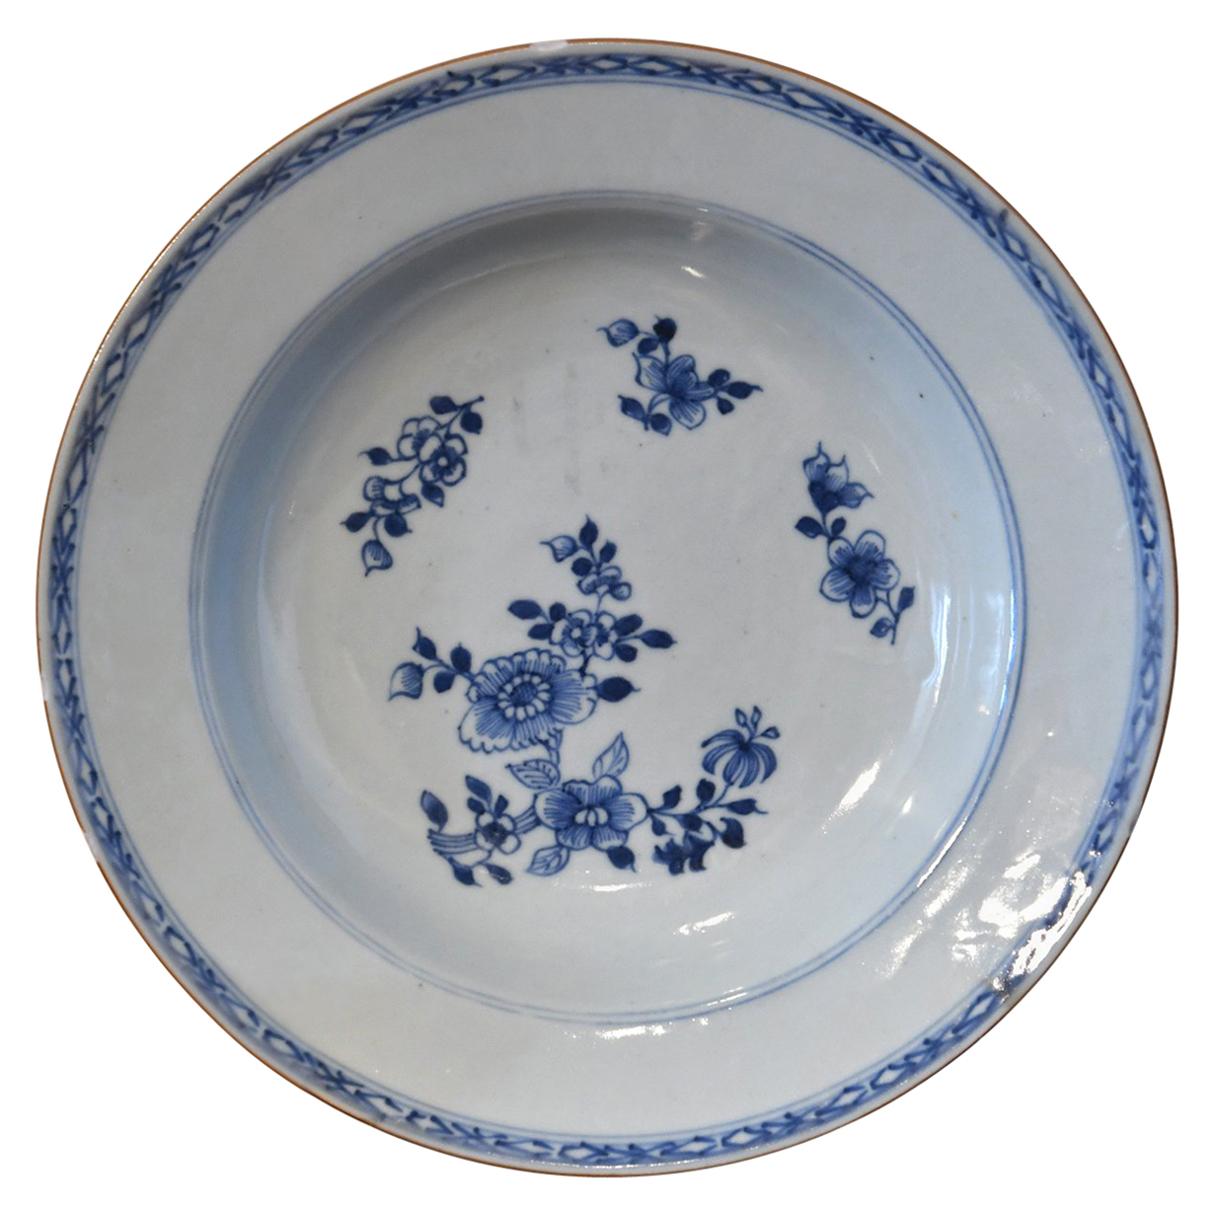 Chinesische Qing Qianlong-Porzellanschale in Blau und Weiß mit Blumen aus dem 18. Jahrhundert